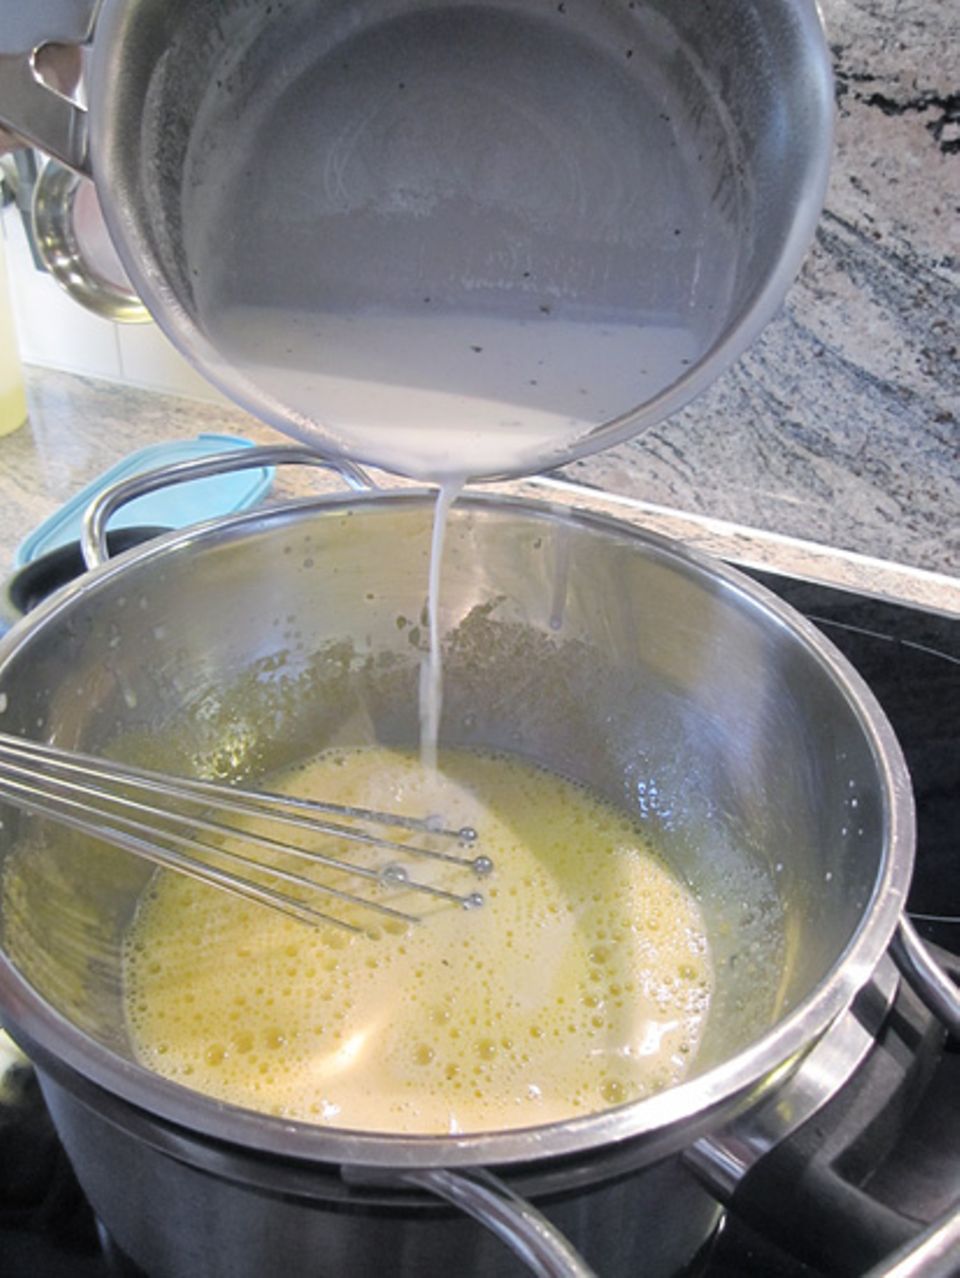 Kochtipp: Unter Rühren fügt ihr die Vanillemilch zu der Eiercreme